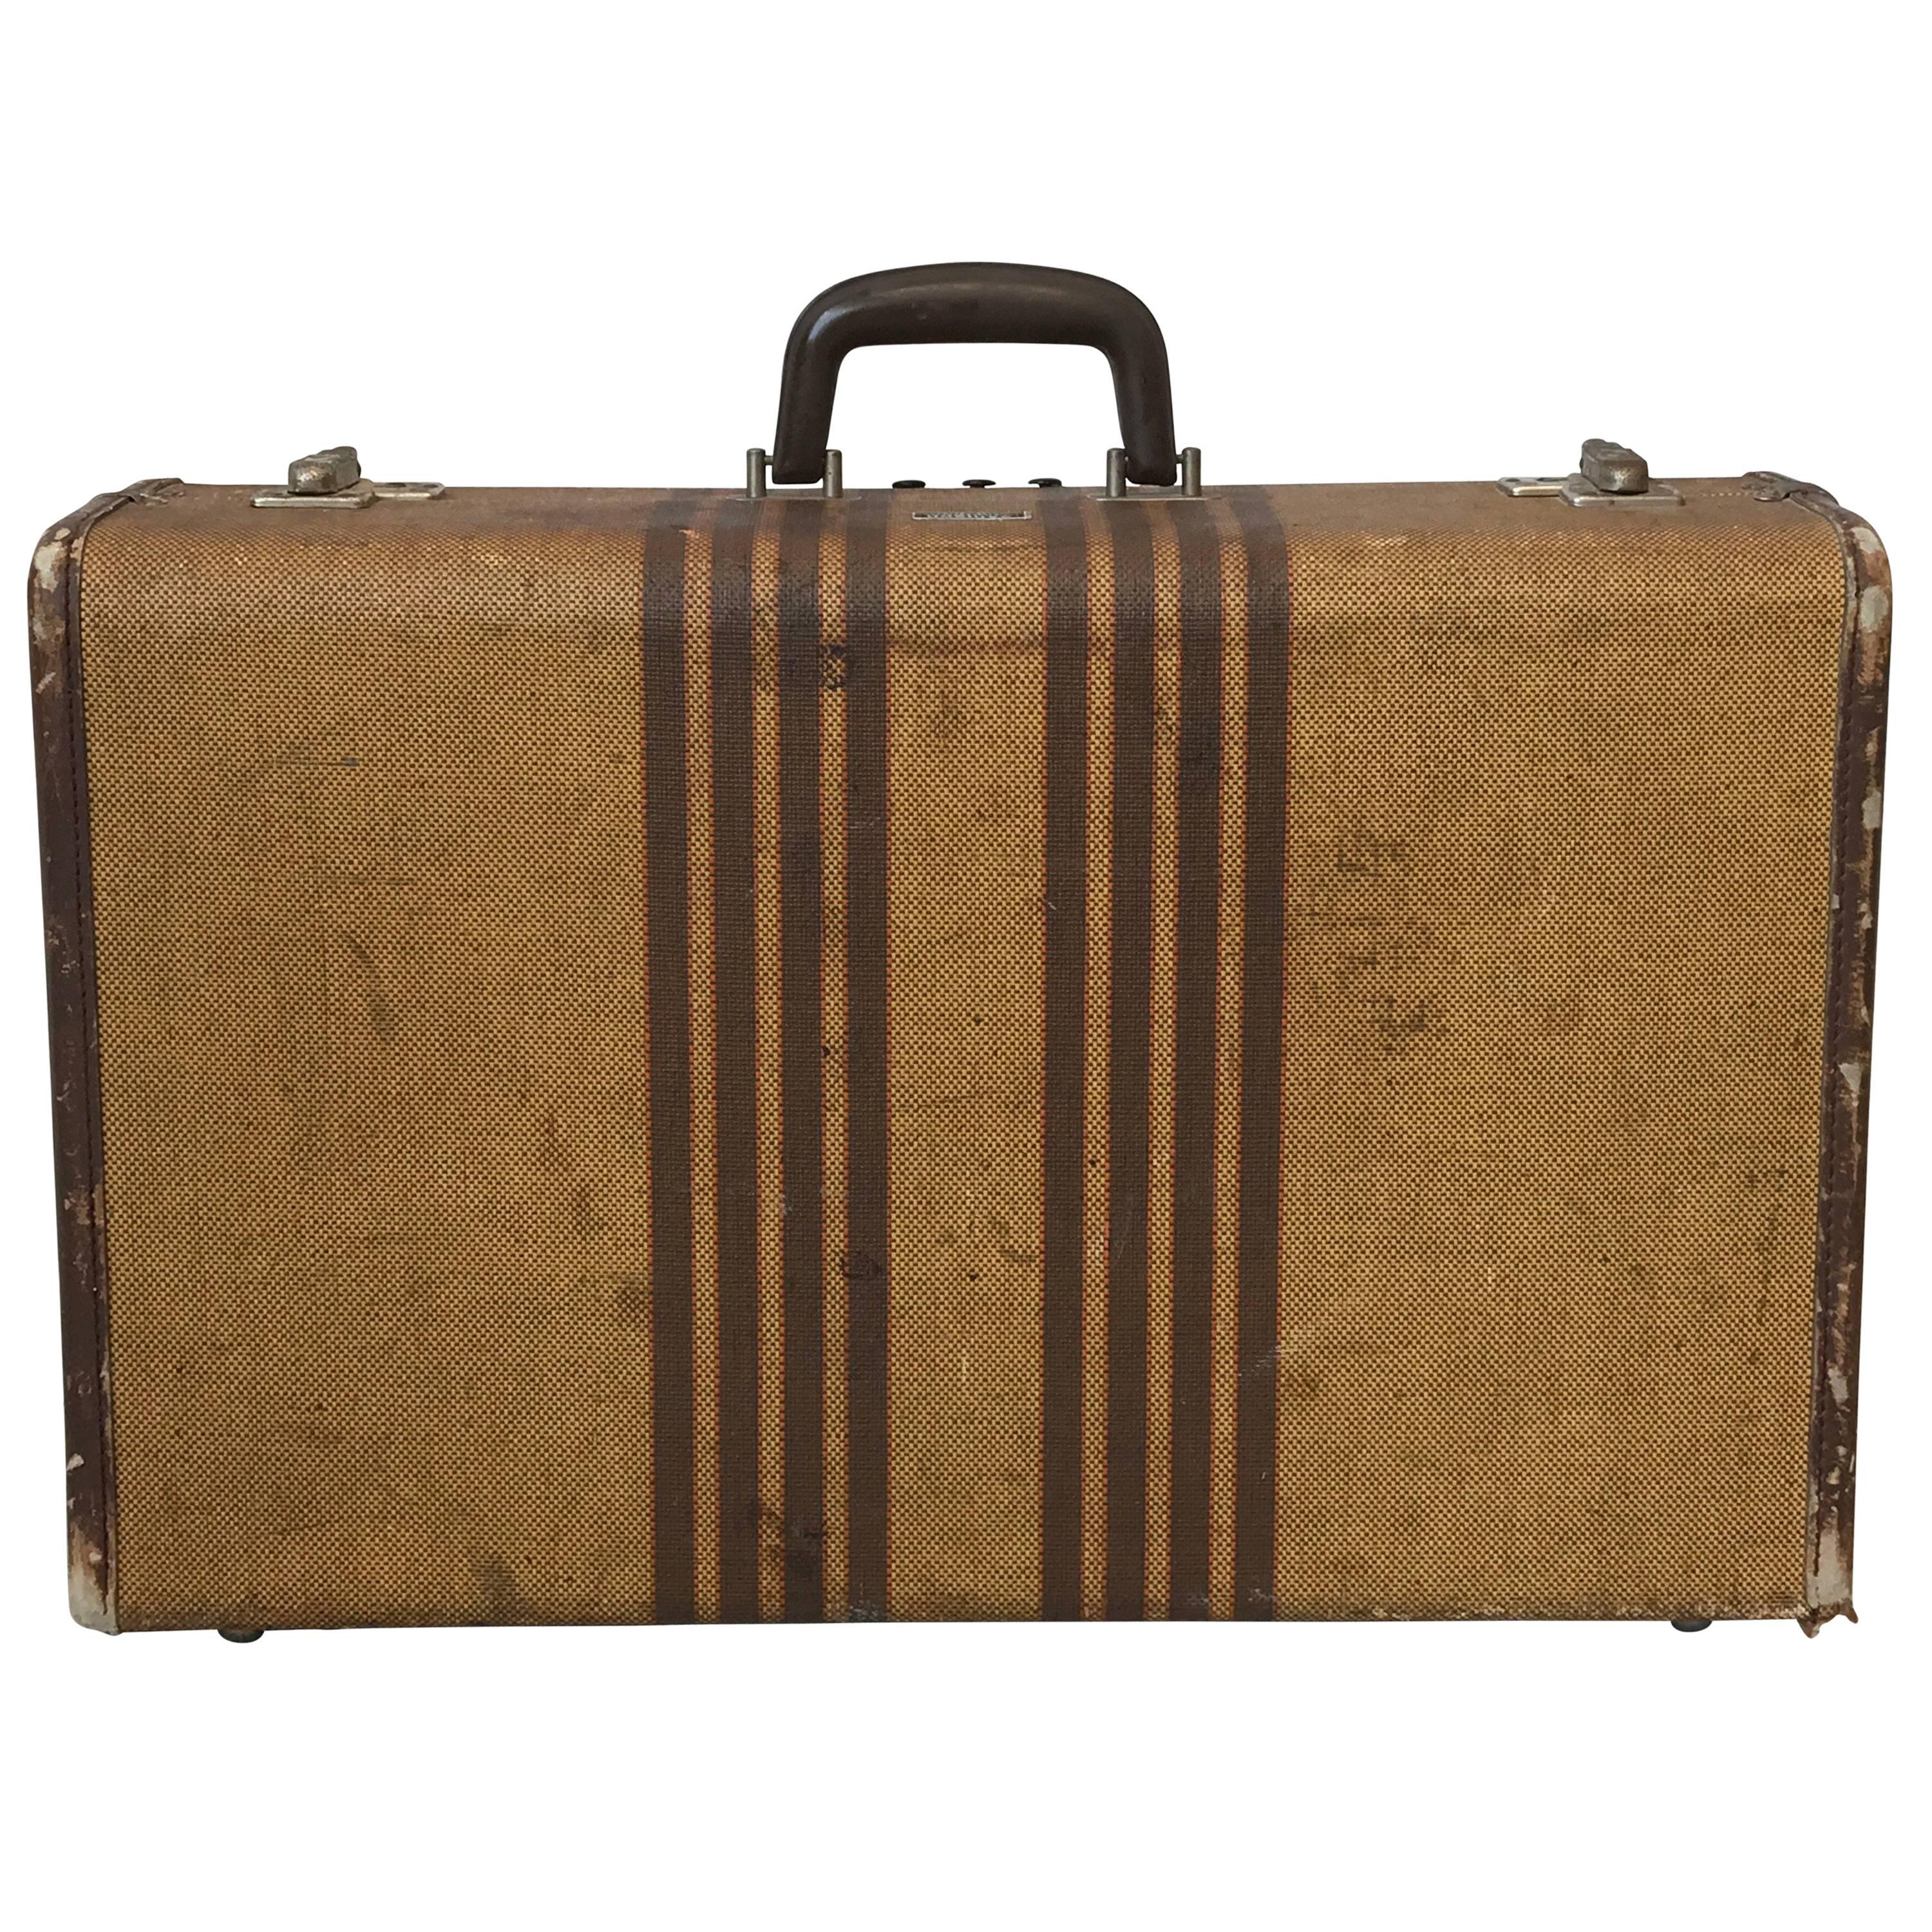 1940s Wicker Hard Sided Suitcase